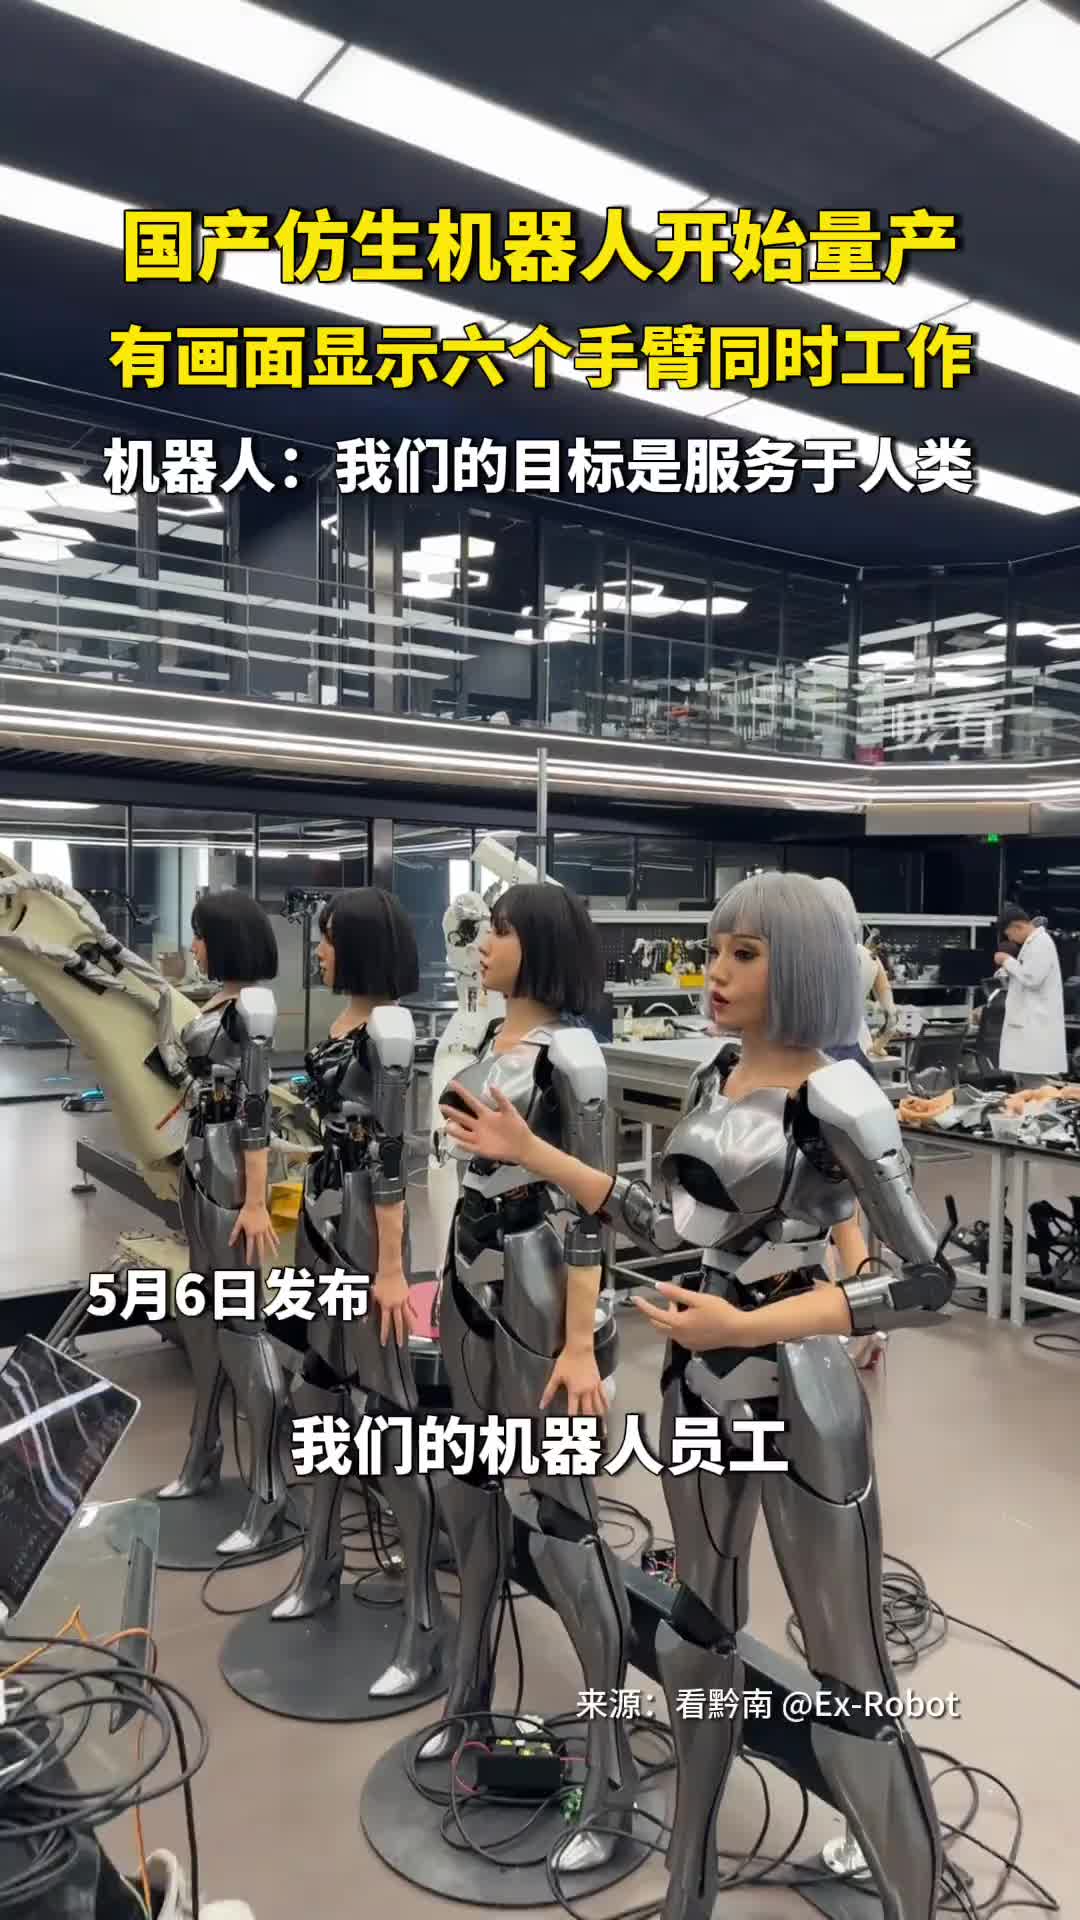 国产仿生机器人开始量产，为啥看着有点害怕呢！